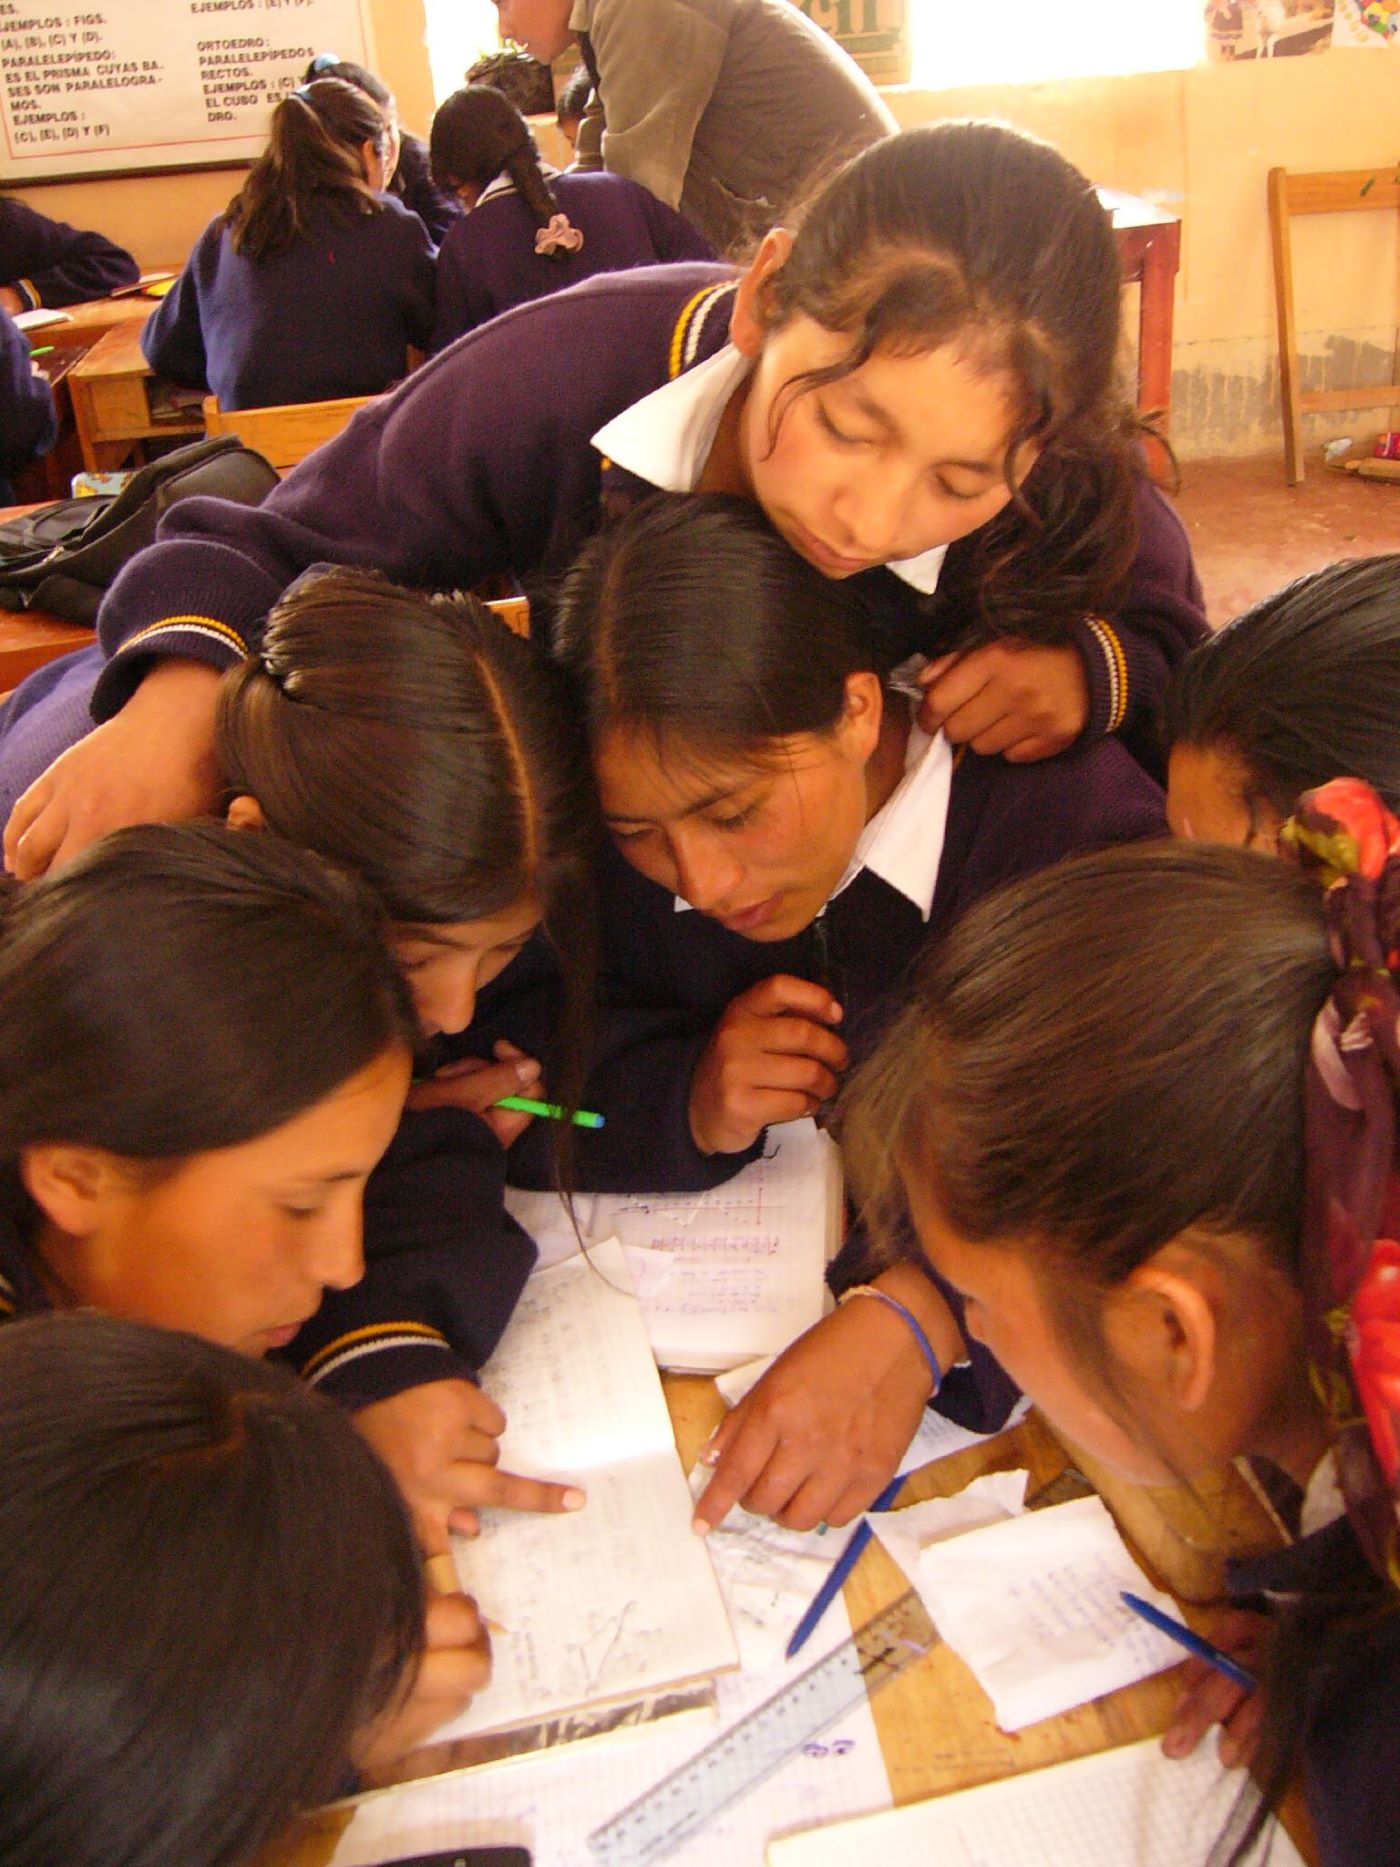 School girls in Peru